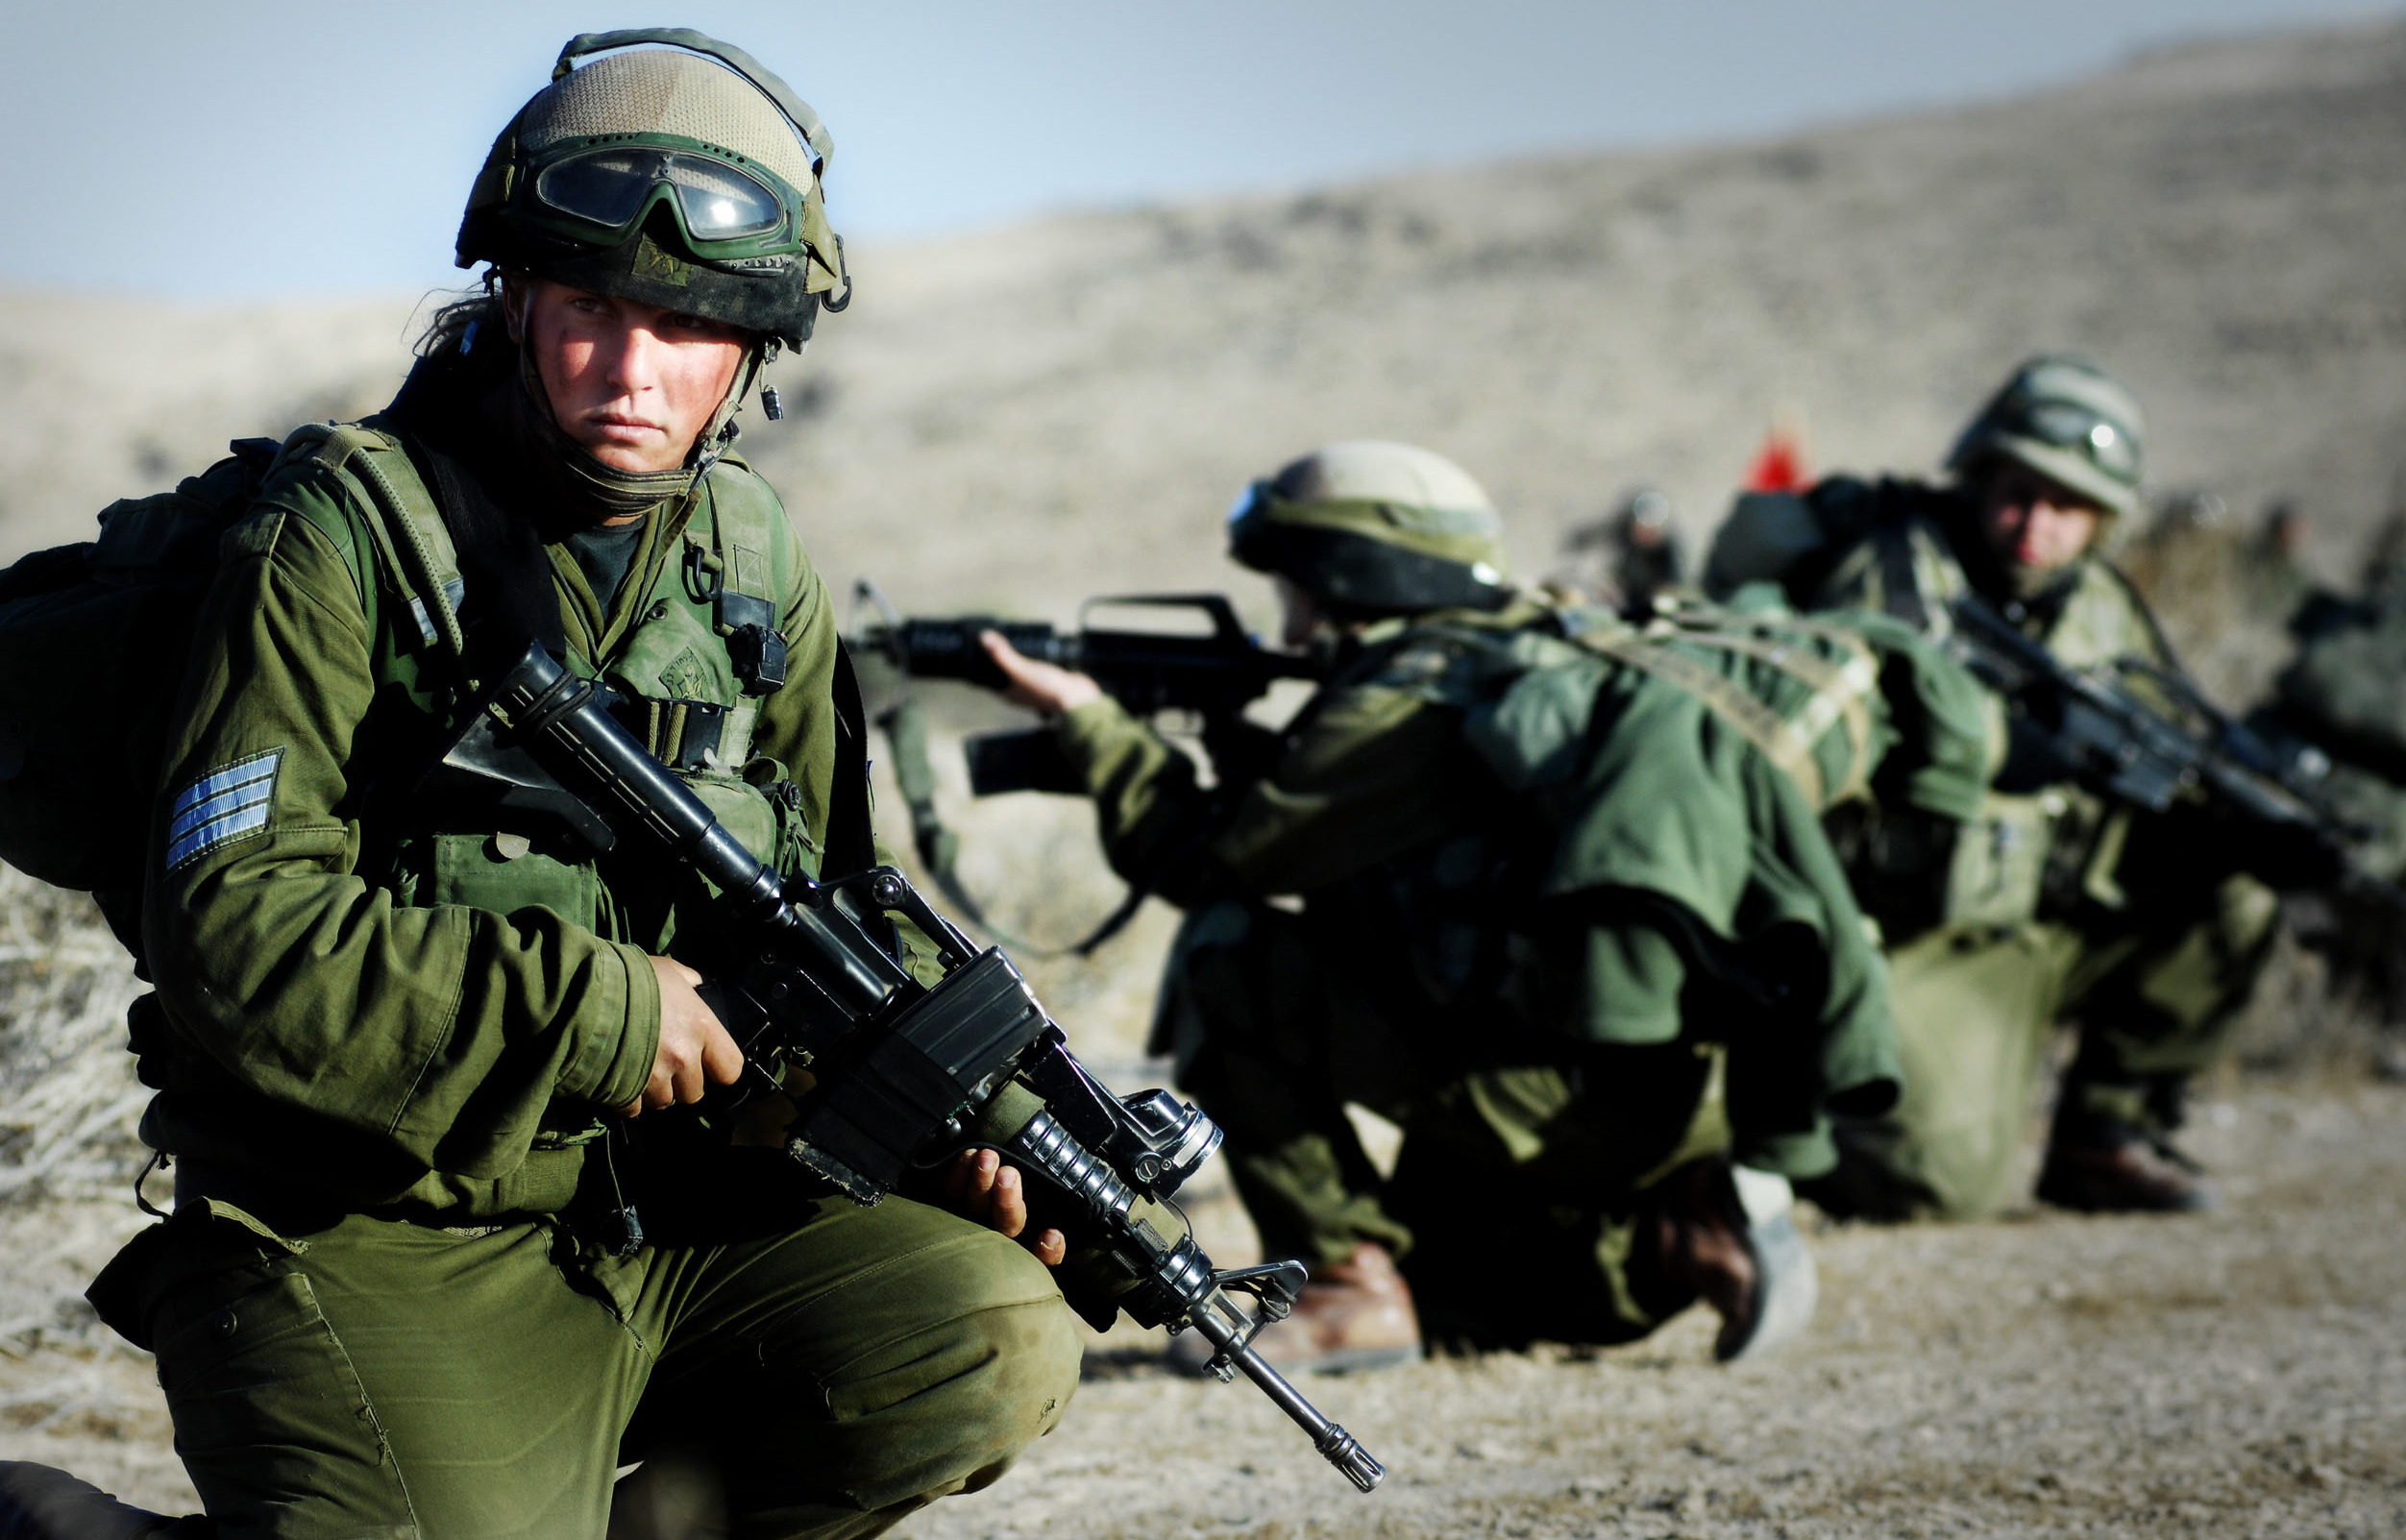 Palestinians say Israeli army kills man in West Bank raid